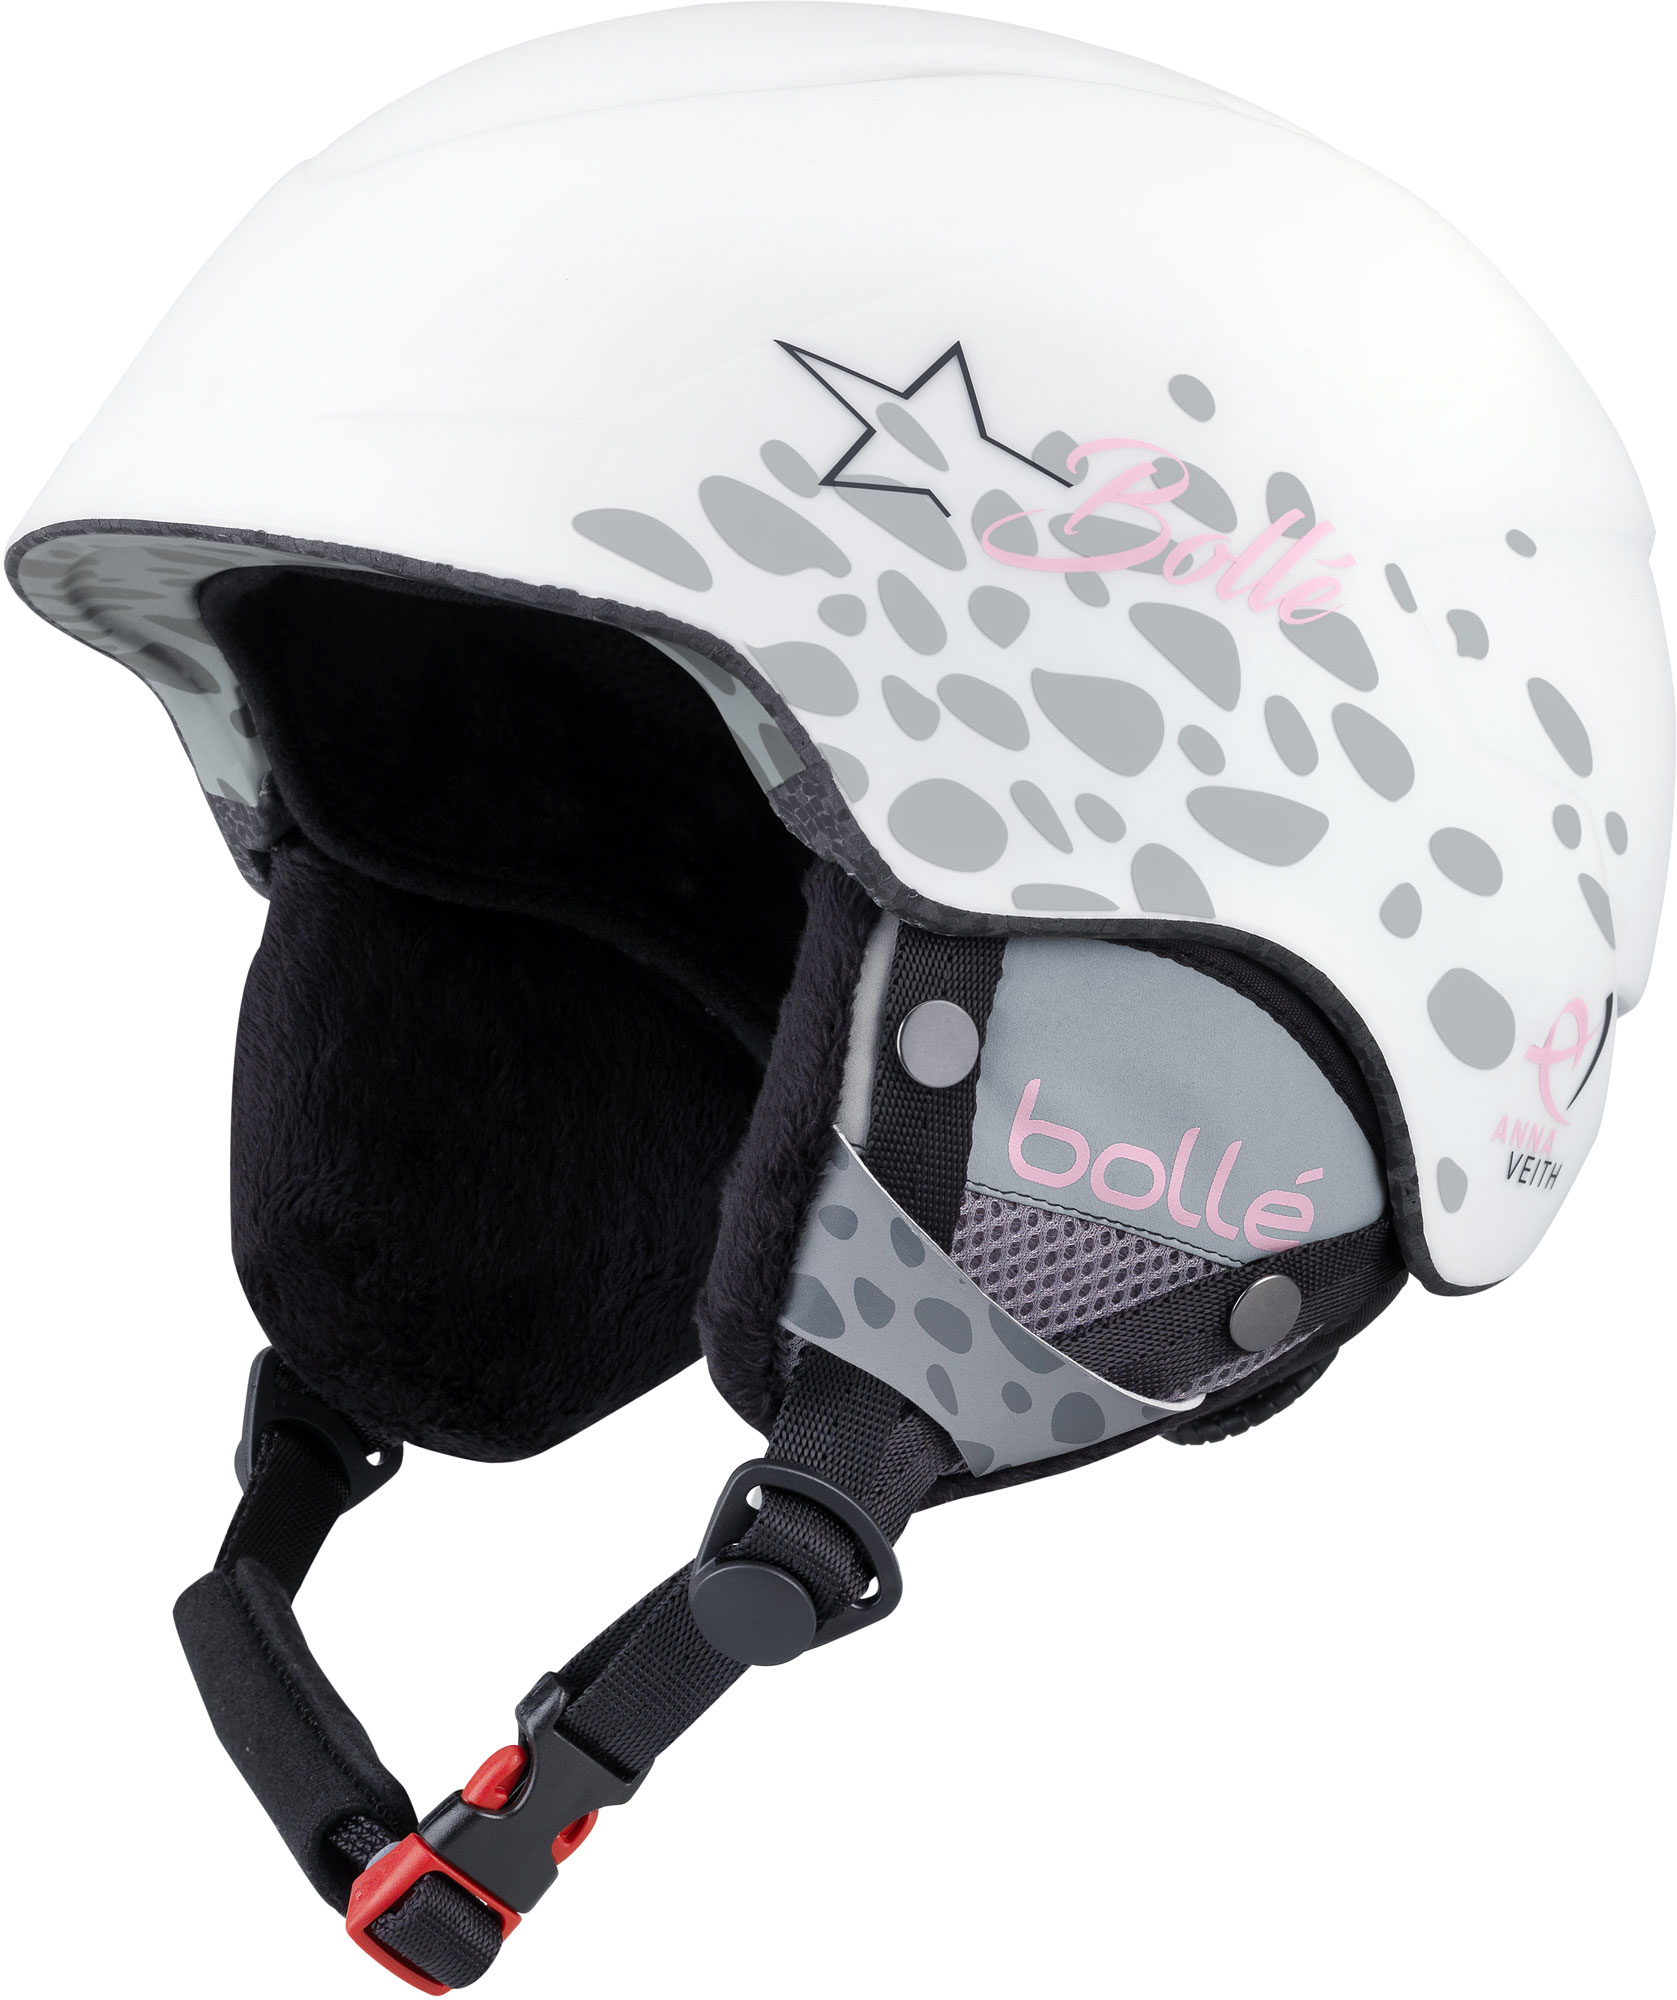 Girls’ ski helmet